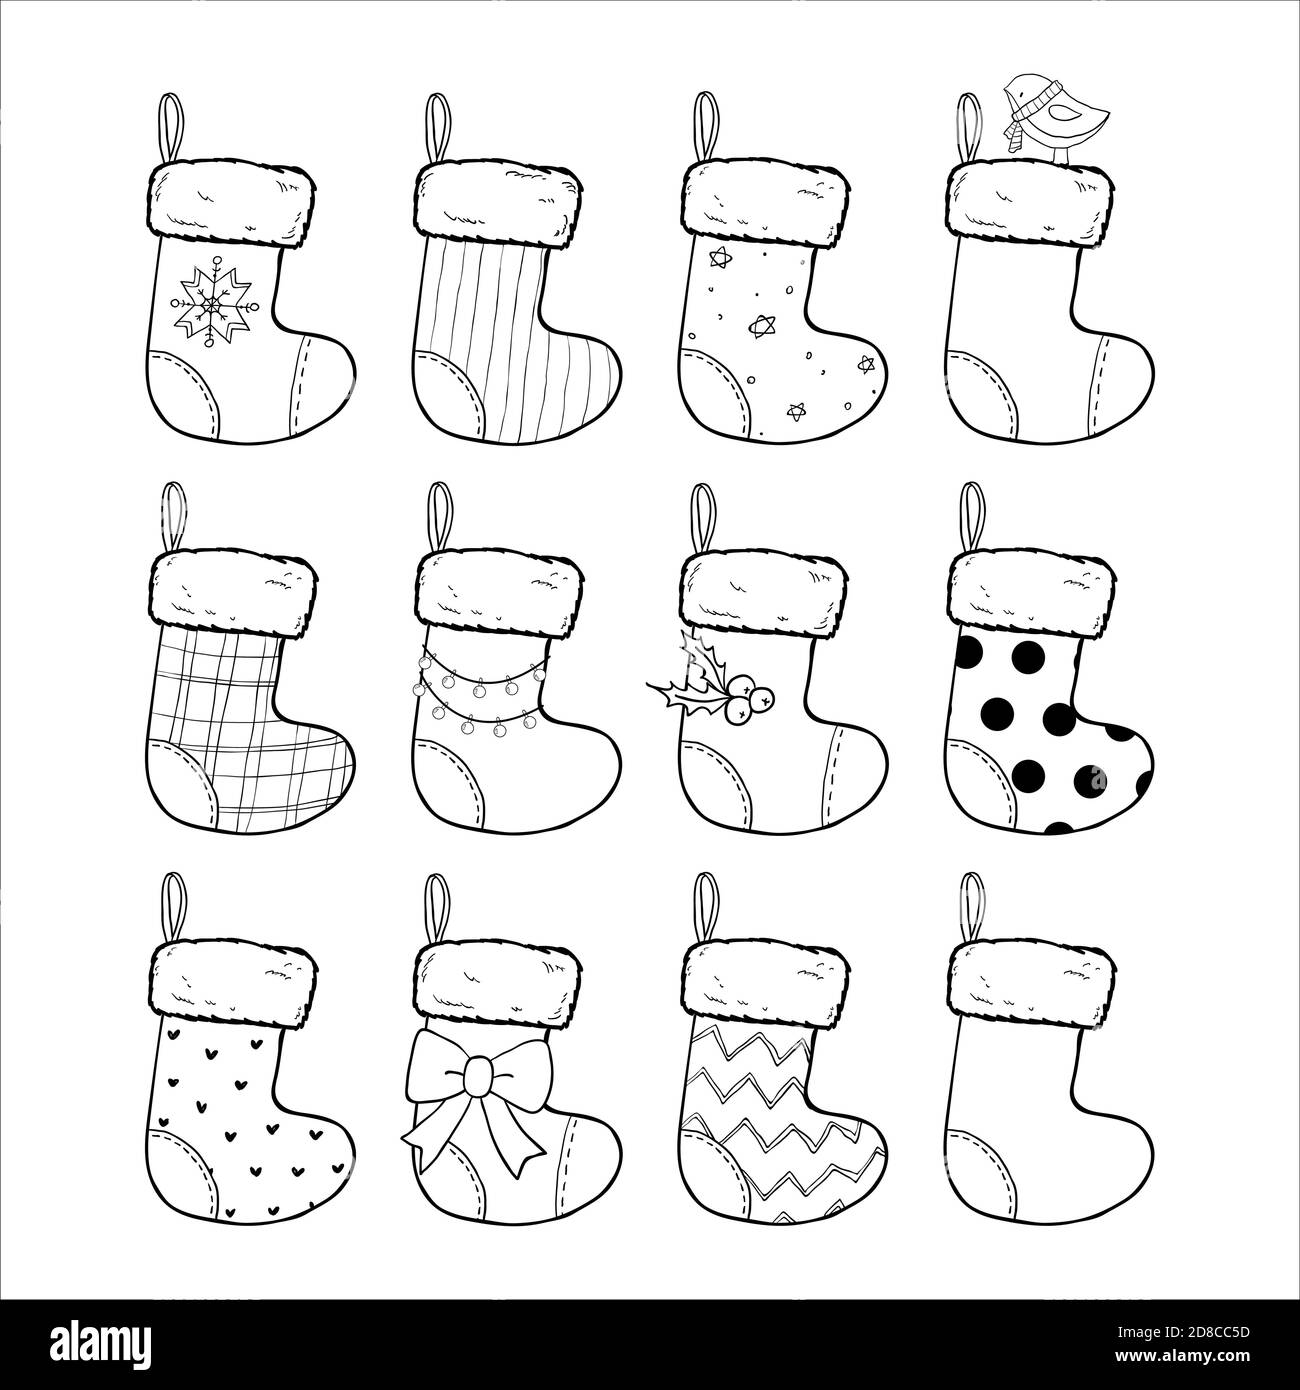 Weihnachtsstrümpfe Set handgezeichnete Vektor-Illustration, schwarz und weiß. Sockenförmige Taschen. Verzierte Wintersocken, Weihnachtsgeschenke Stock Vektor